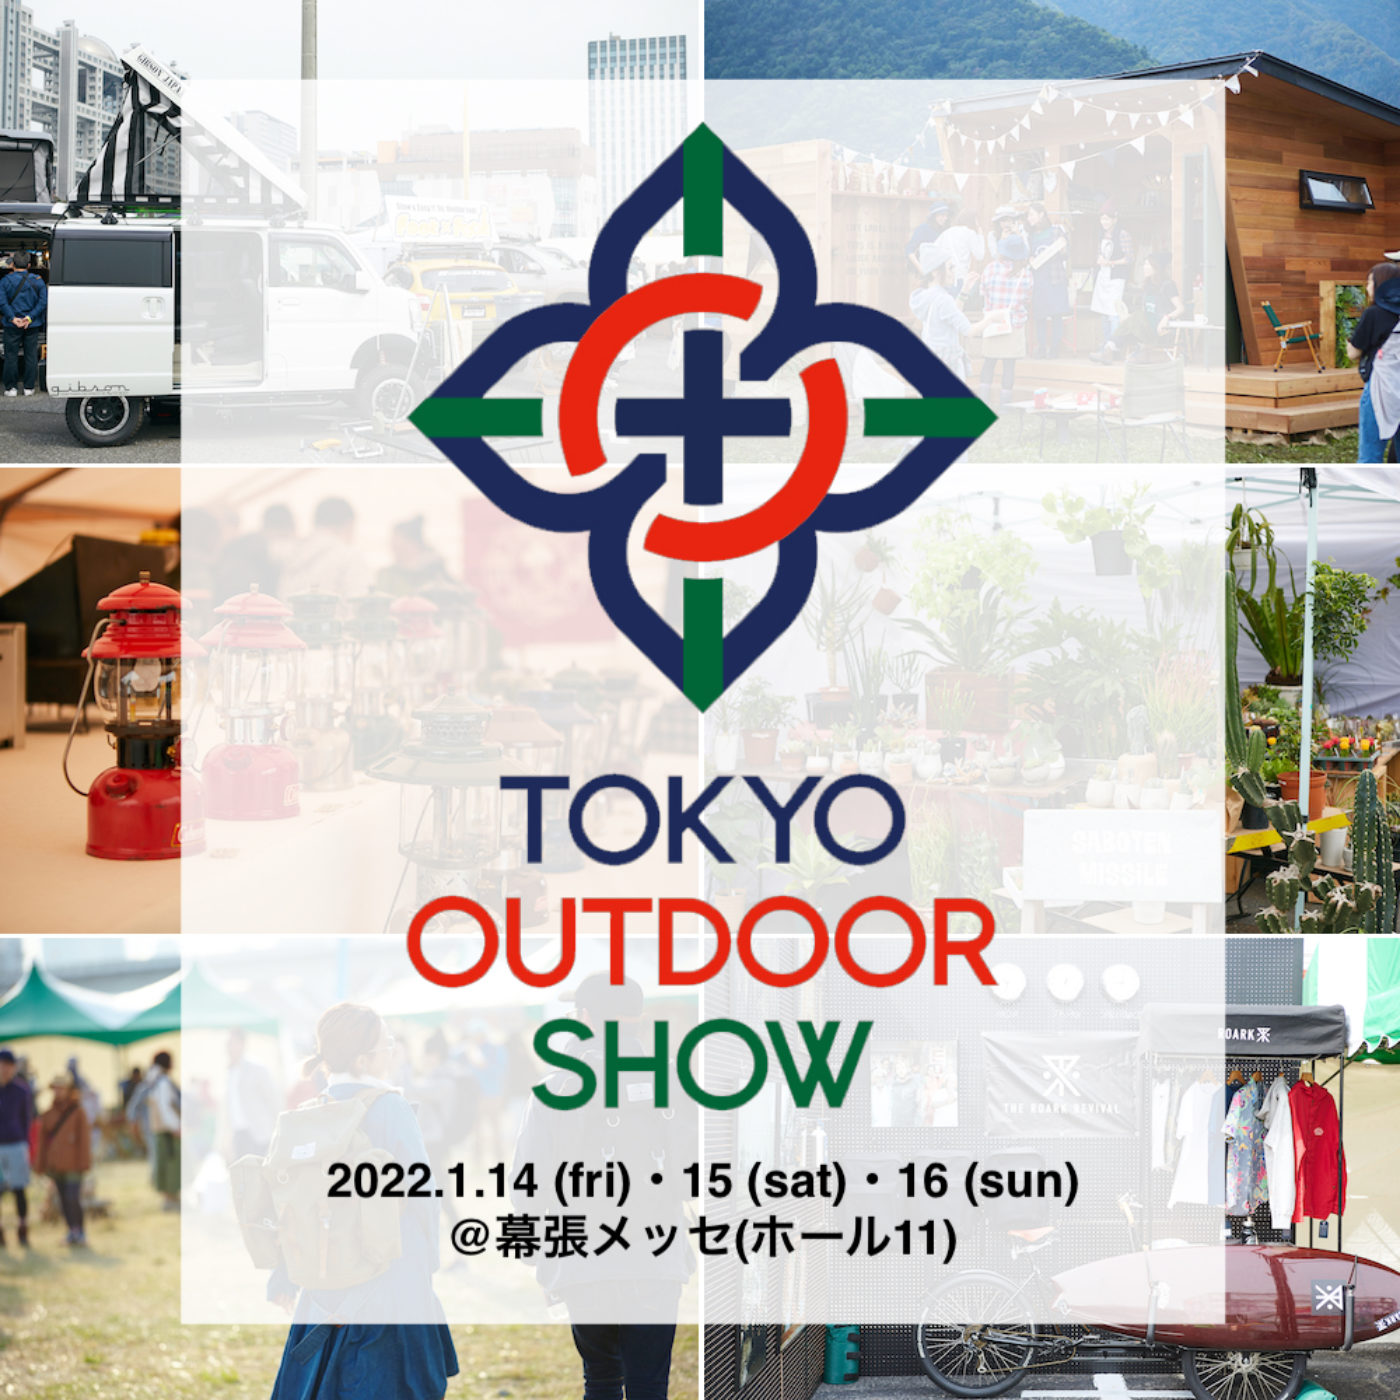 アウトドア大博覧会「TOKYO OUTDOOR SHOW2022」幕張メッセにて開催!! 